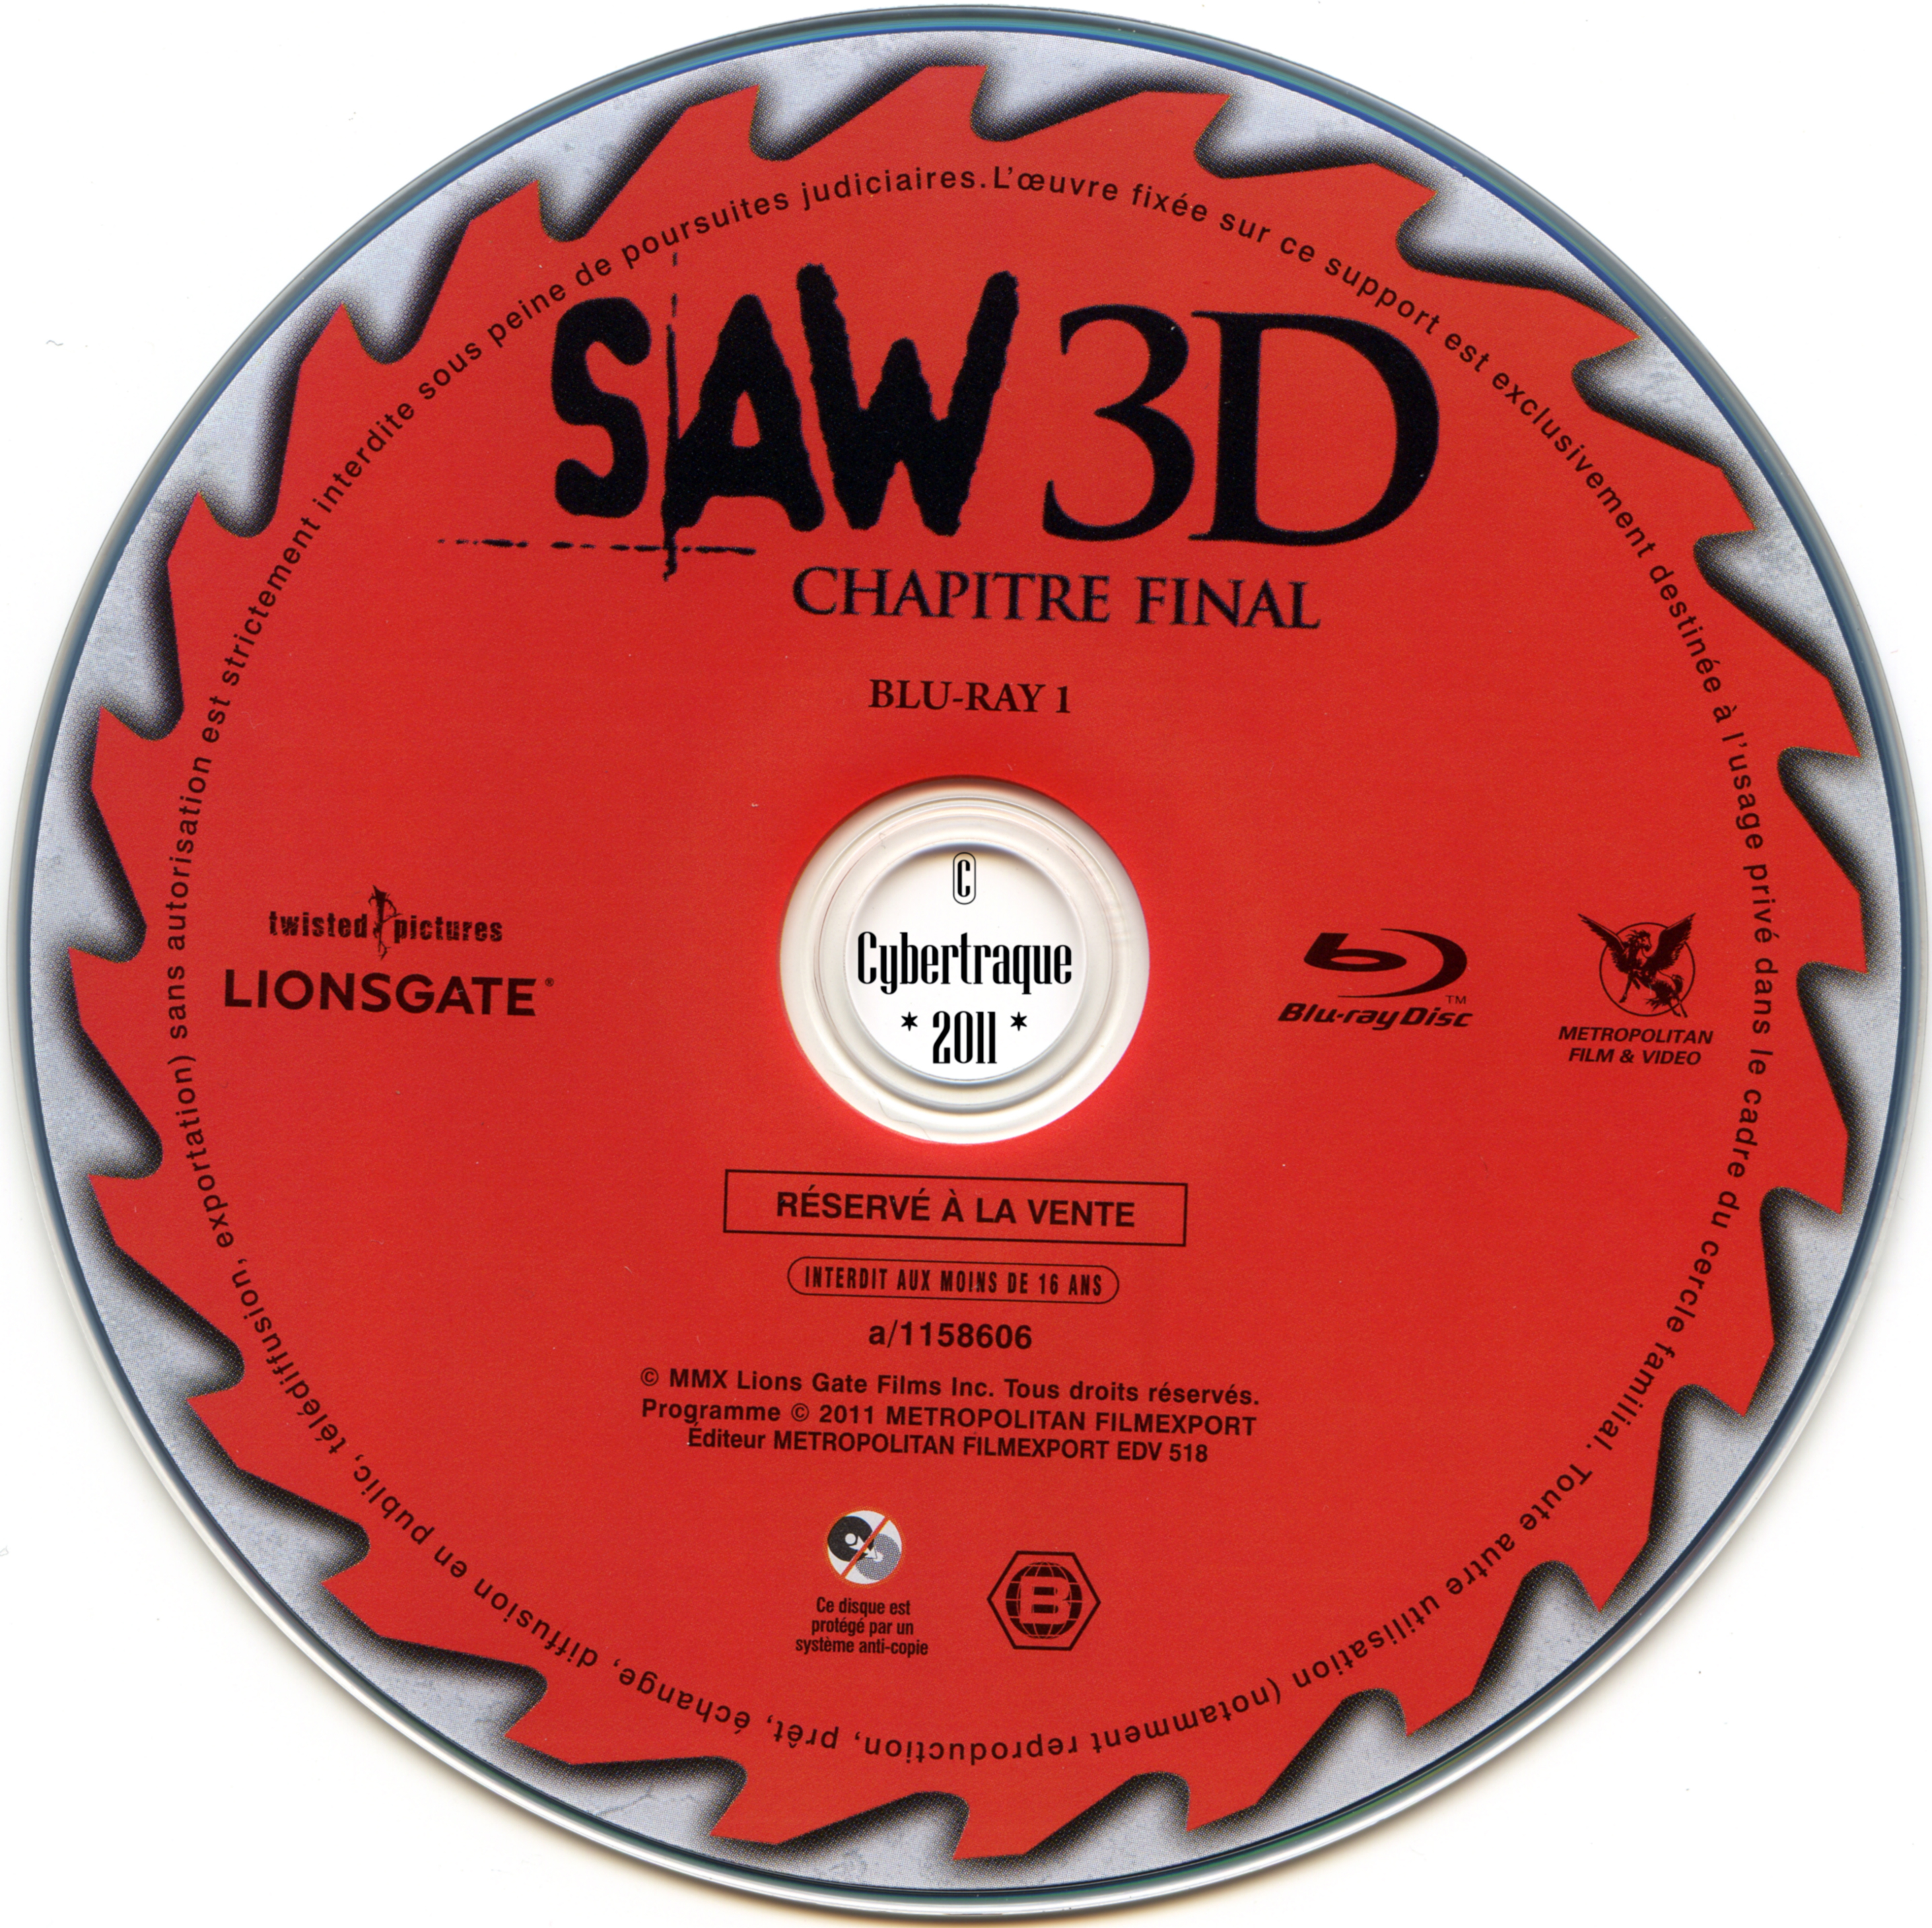 Saw 3D chapitre final DISC 1 (BLU-RAY)